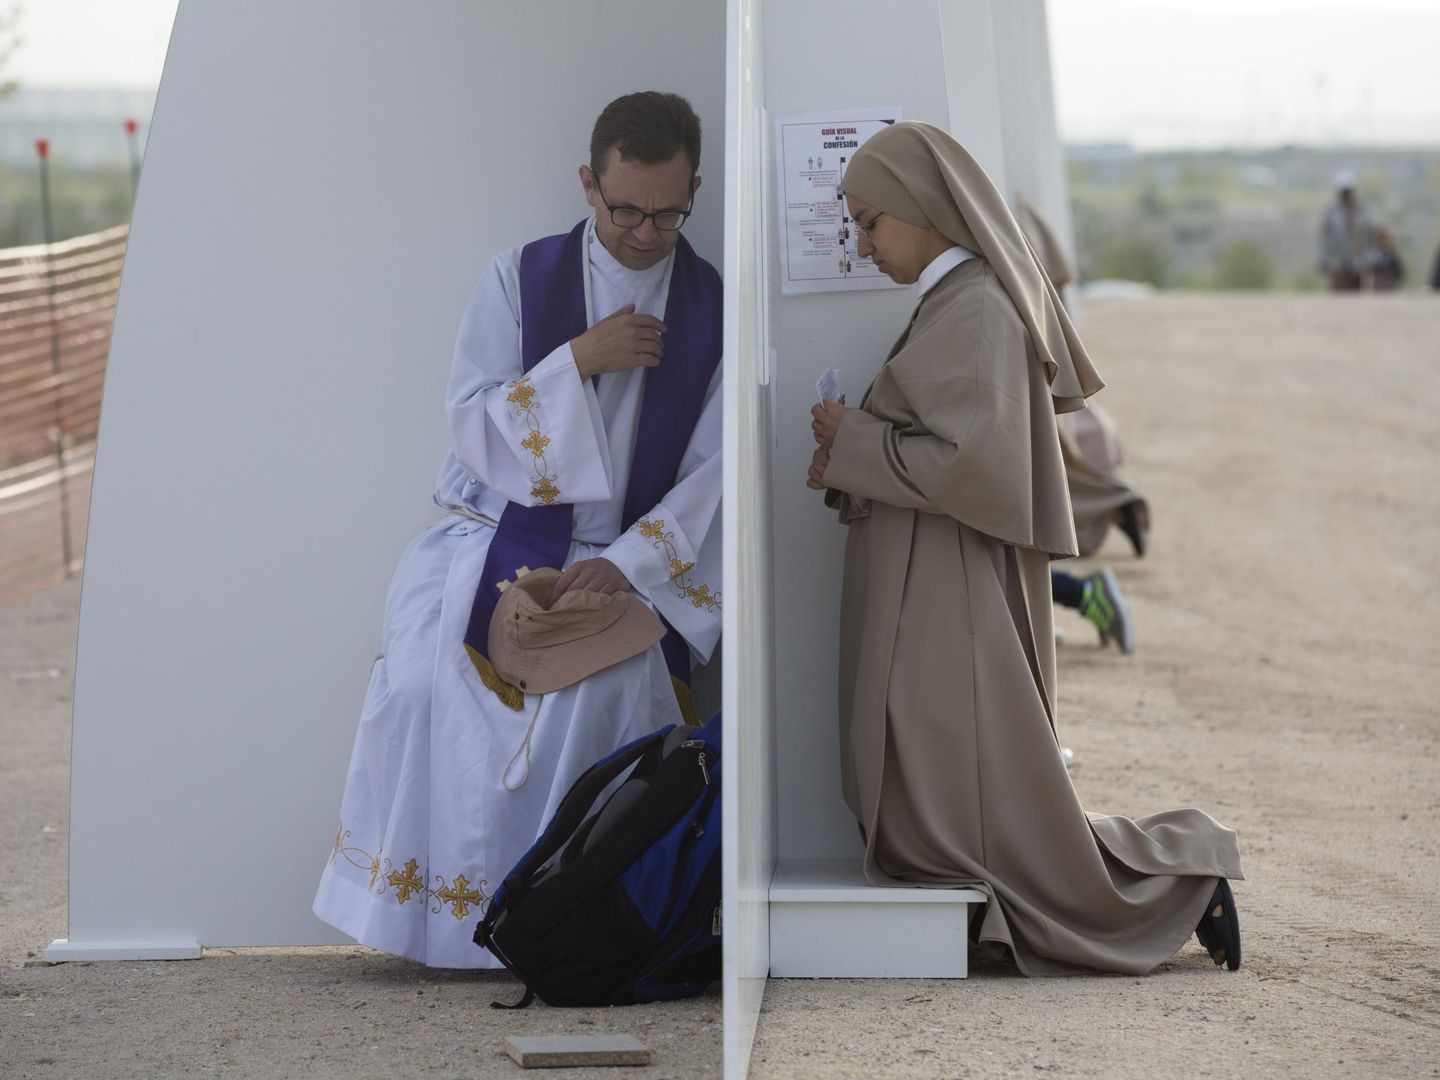 Una monja recibe confesión durante la ceremonia de beatificación de Álvaro del Portillo, sucesor de Escrivá de Balaguer, en Valdebebas en 2014. (AP)